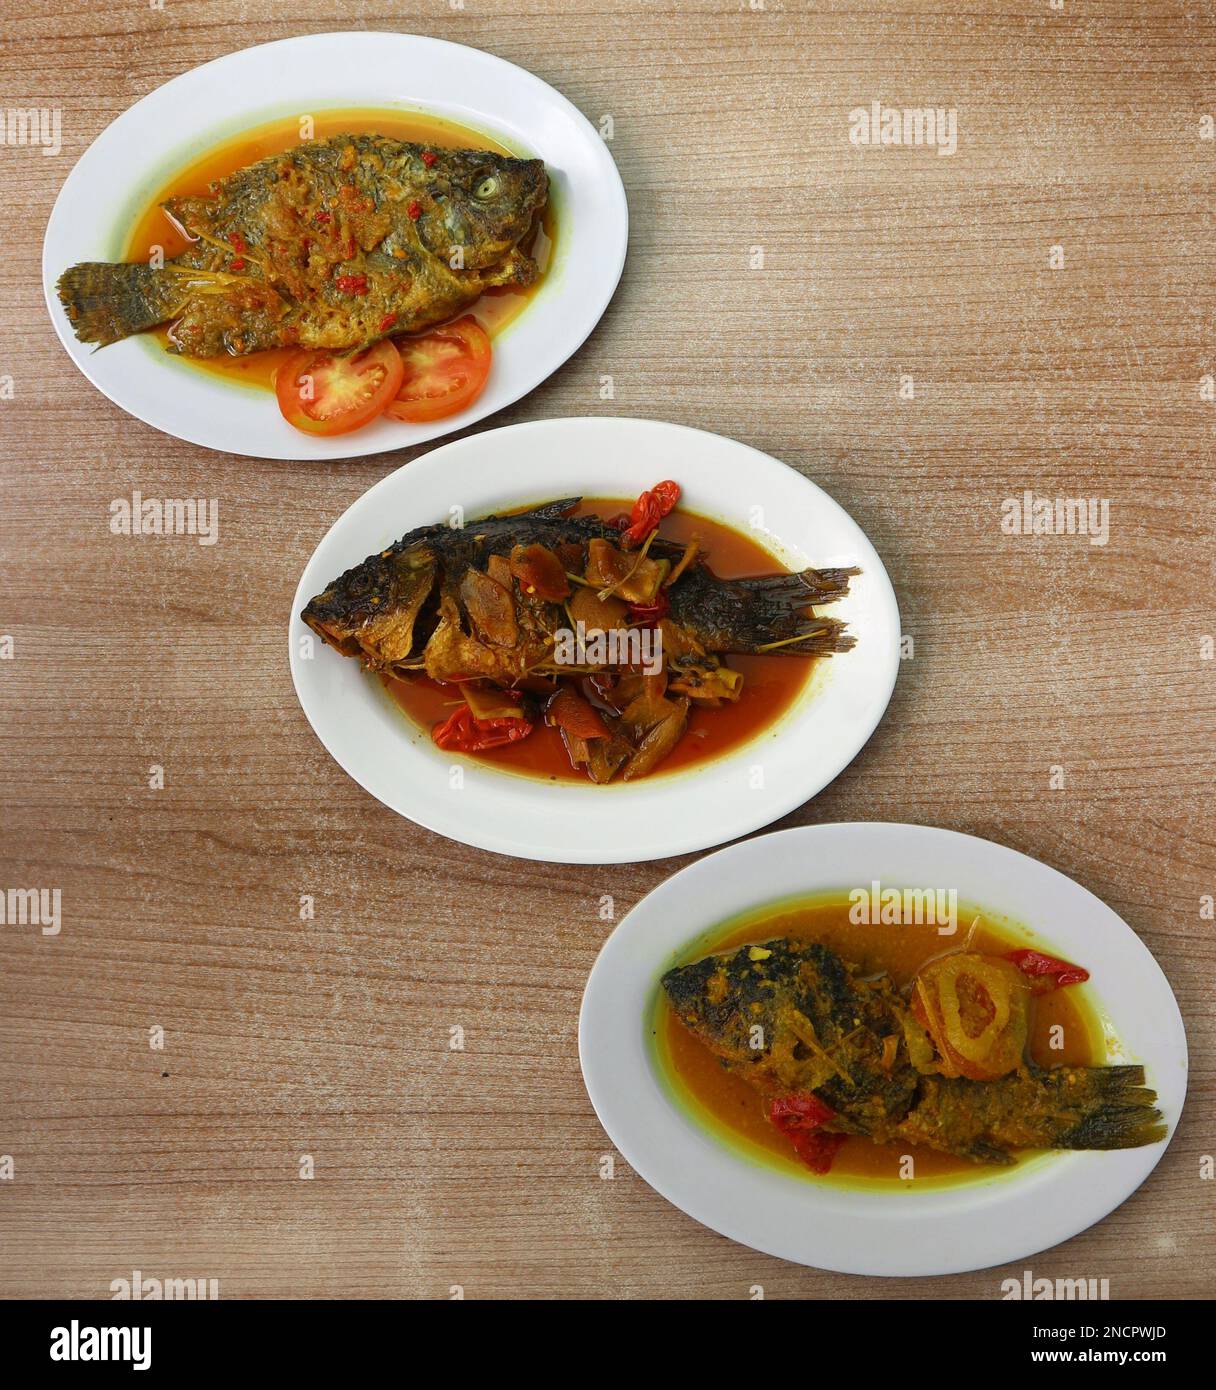 Drei Teller gebratener Fisch mit scharfer und herzhafter Soße Stockfoto